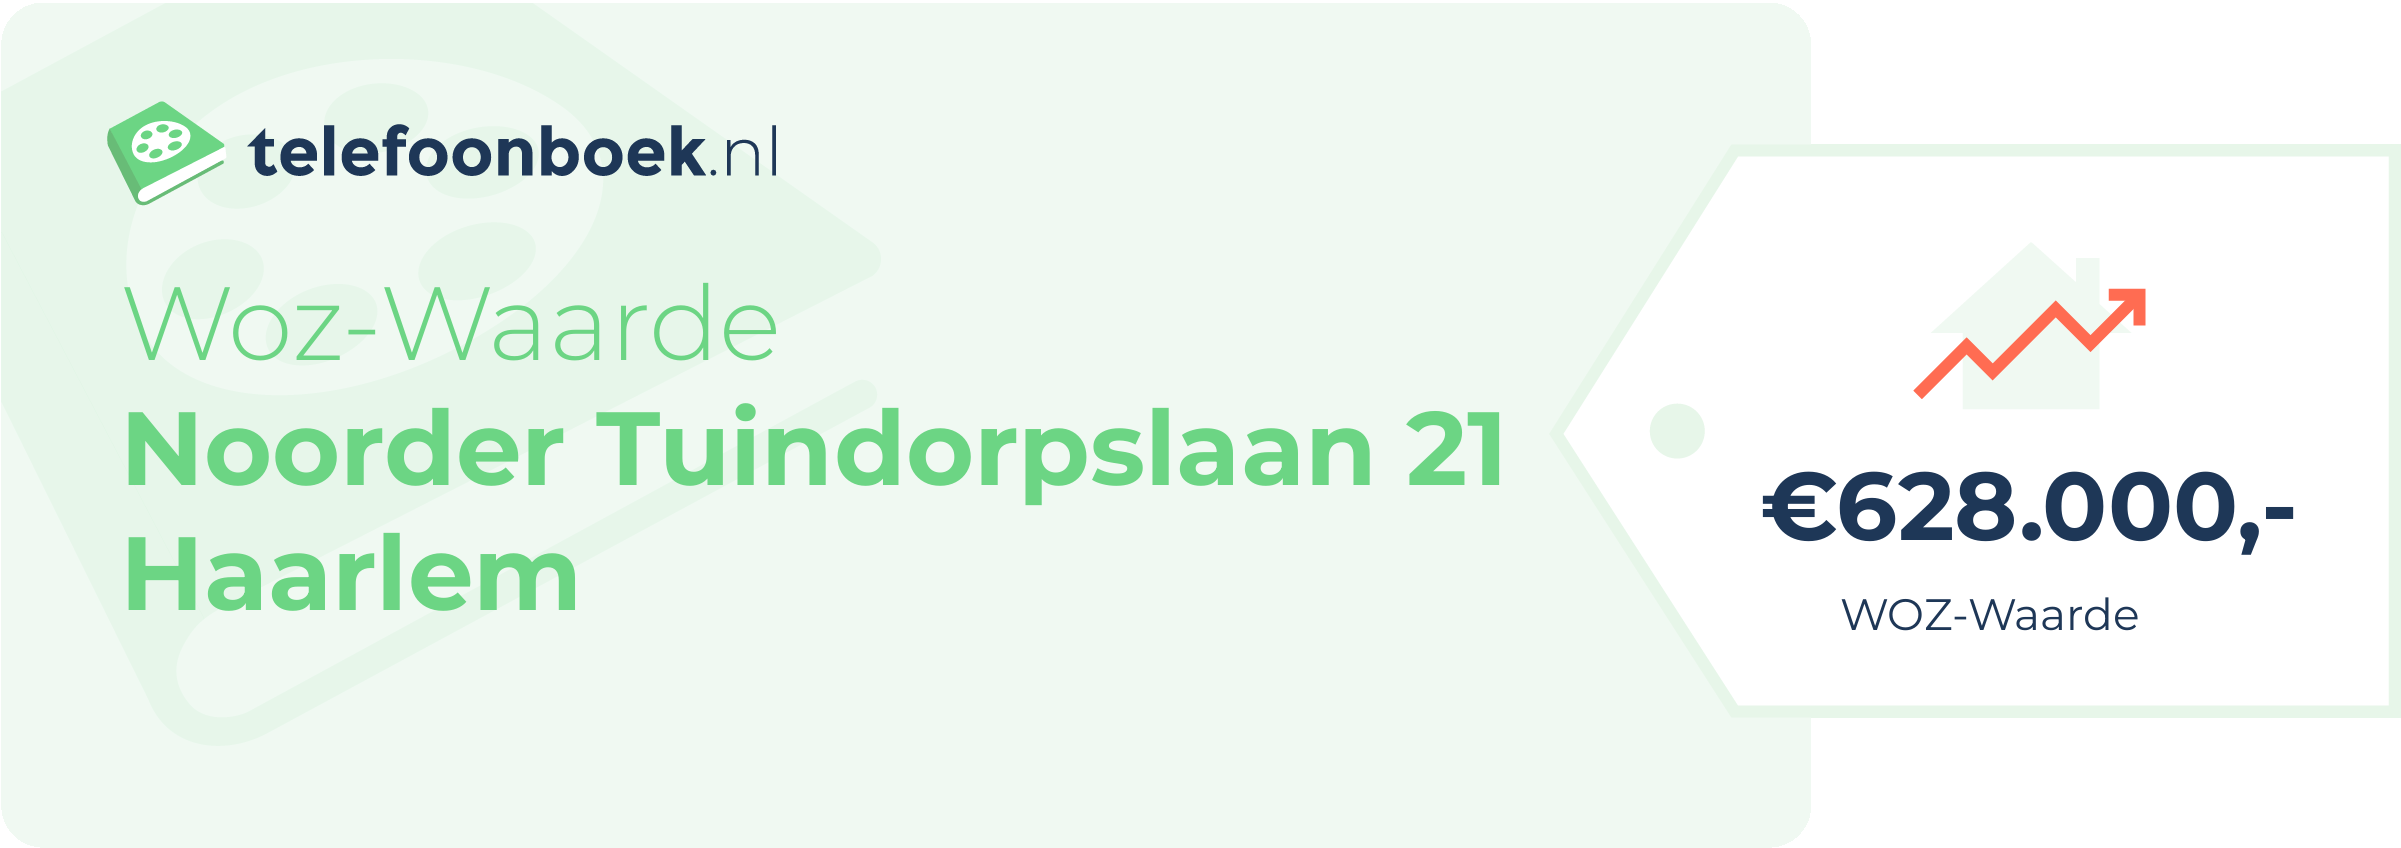 WOZ-waarde Noorder Tuindorpslaan 21 Haarlem